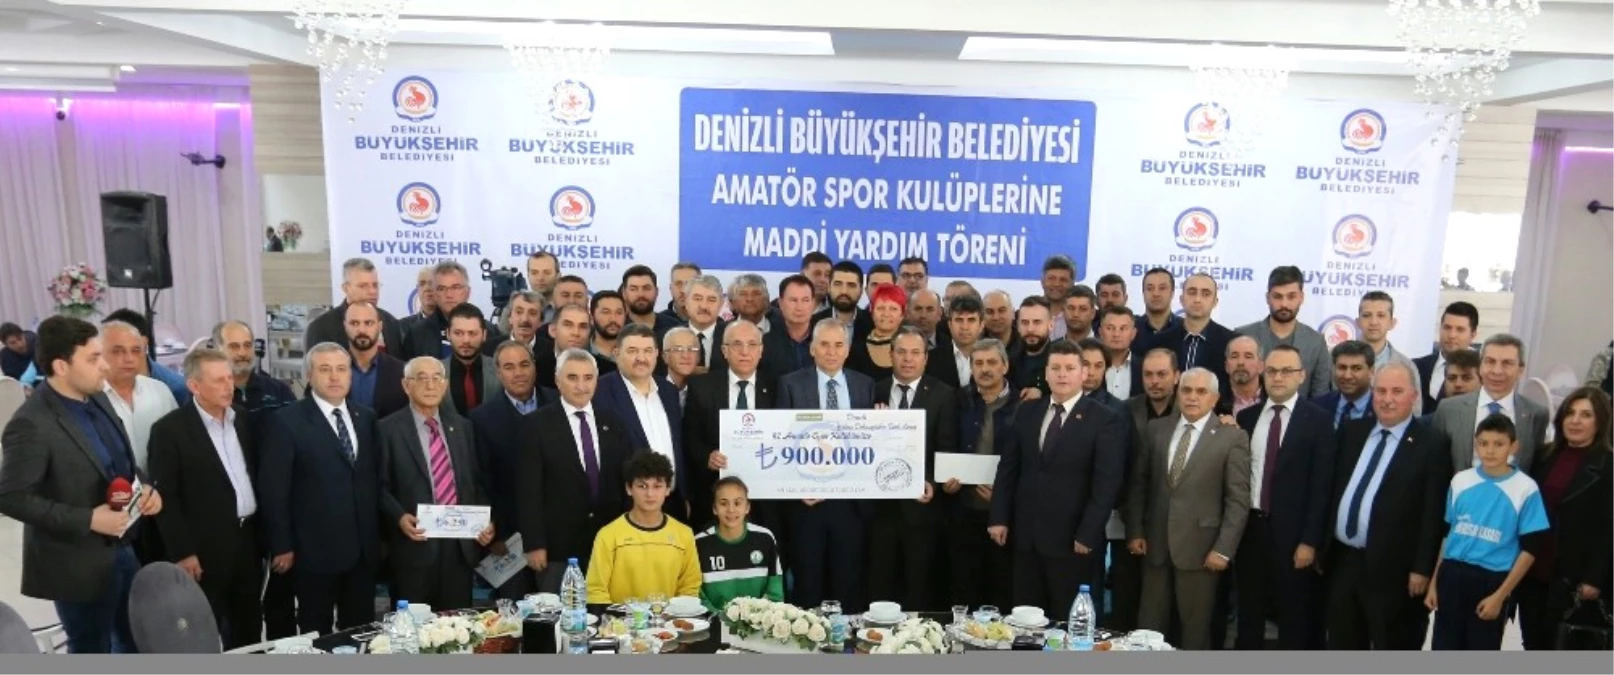 Denizli Büyükşehir\'den 97 Amatör Spor Kulübüne 900 Bin TL Destek